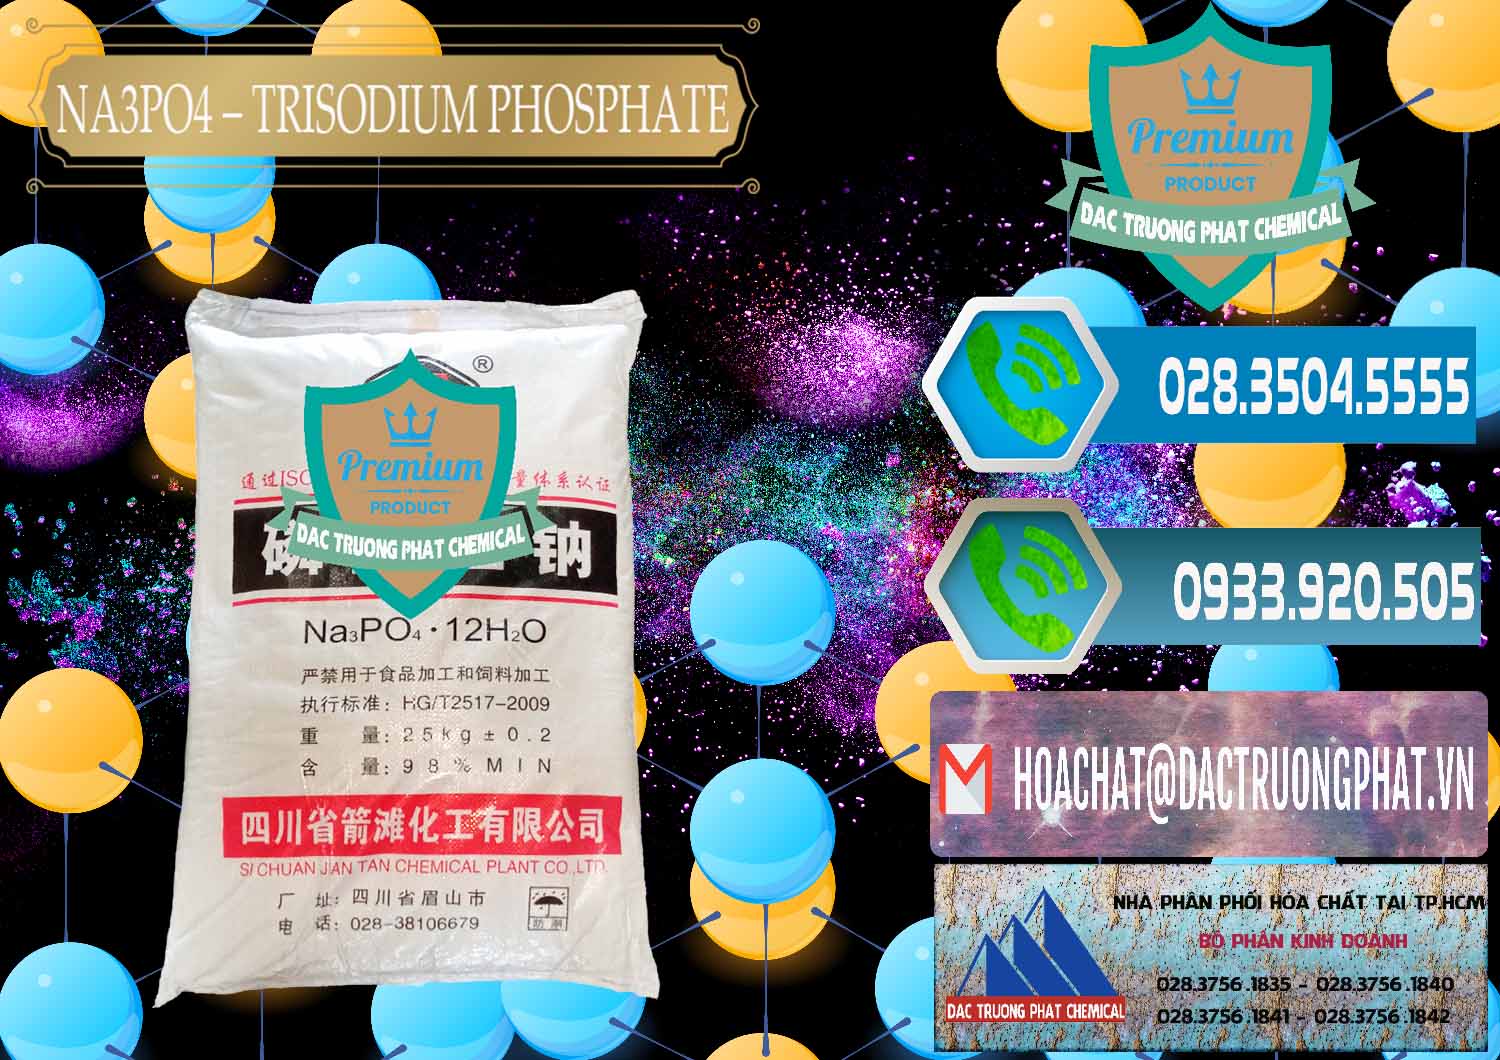 Cty chuyên bán và cung cấp Na3PO4 – Trisodium Phosphate Trung Quốc China JT - 0102 - Đơn vị chuyên nhập khẩu - phân phối hóa chất tại TP.HCM - congtyhoachat.net